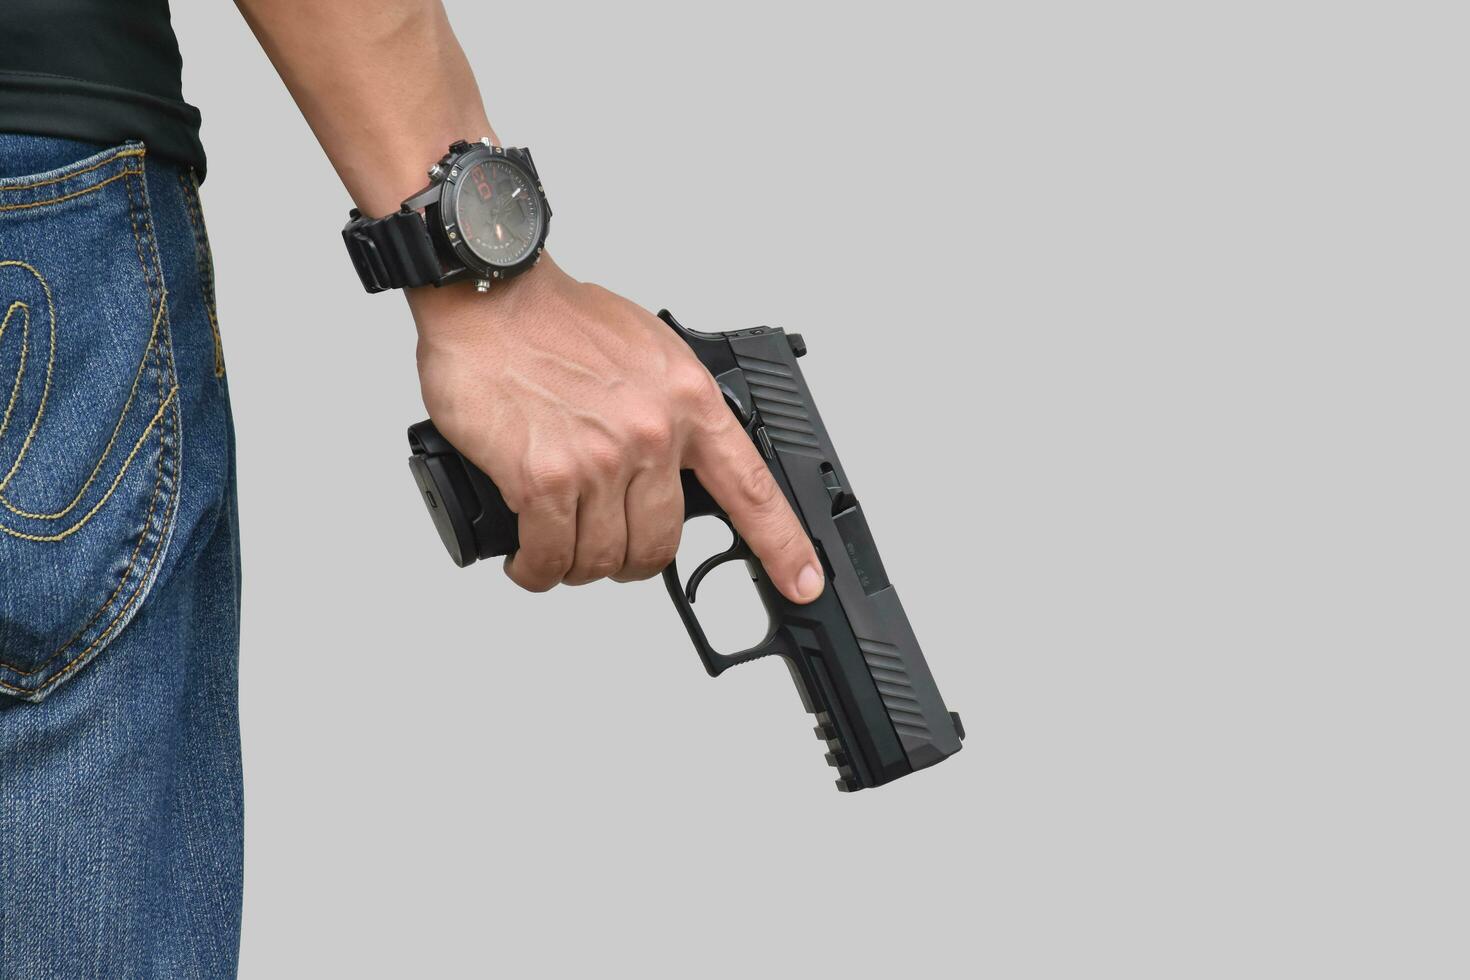 isolato 9mm pistola pistola Tenere nel giusto mano di pistola tiratore con ritaglio percorsi. foto